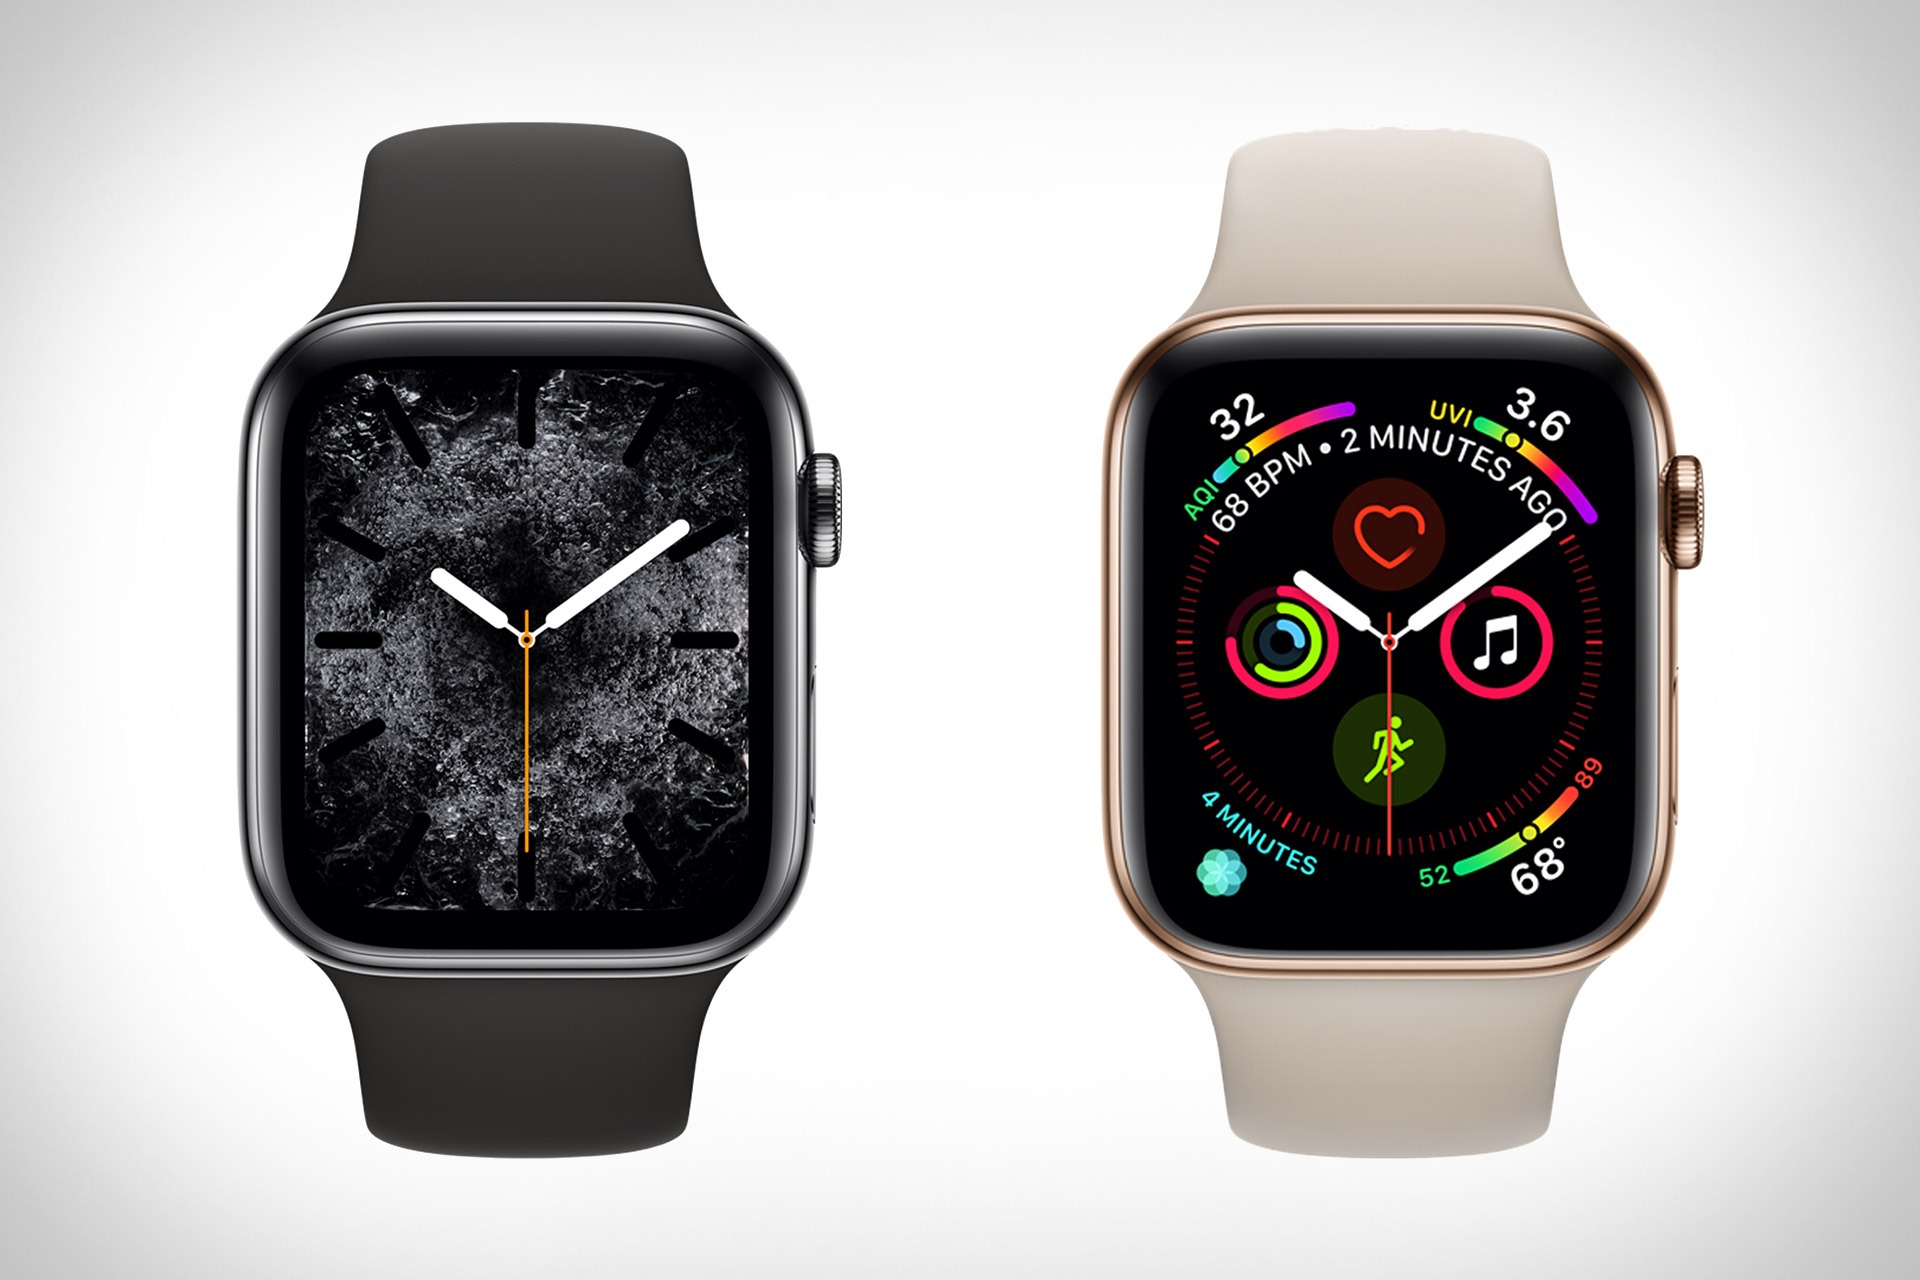 Appel часы. Часы эпл вотч 4. Эпл вотч 4 44mm. Apple watch Series 4 44mm. Часы Apple IWATCH 4 44 mm.